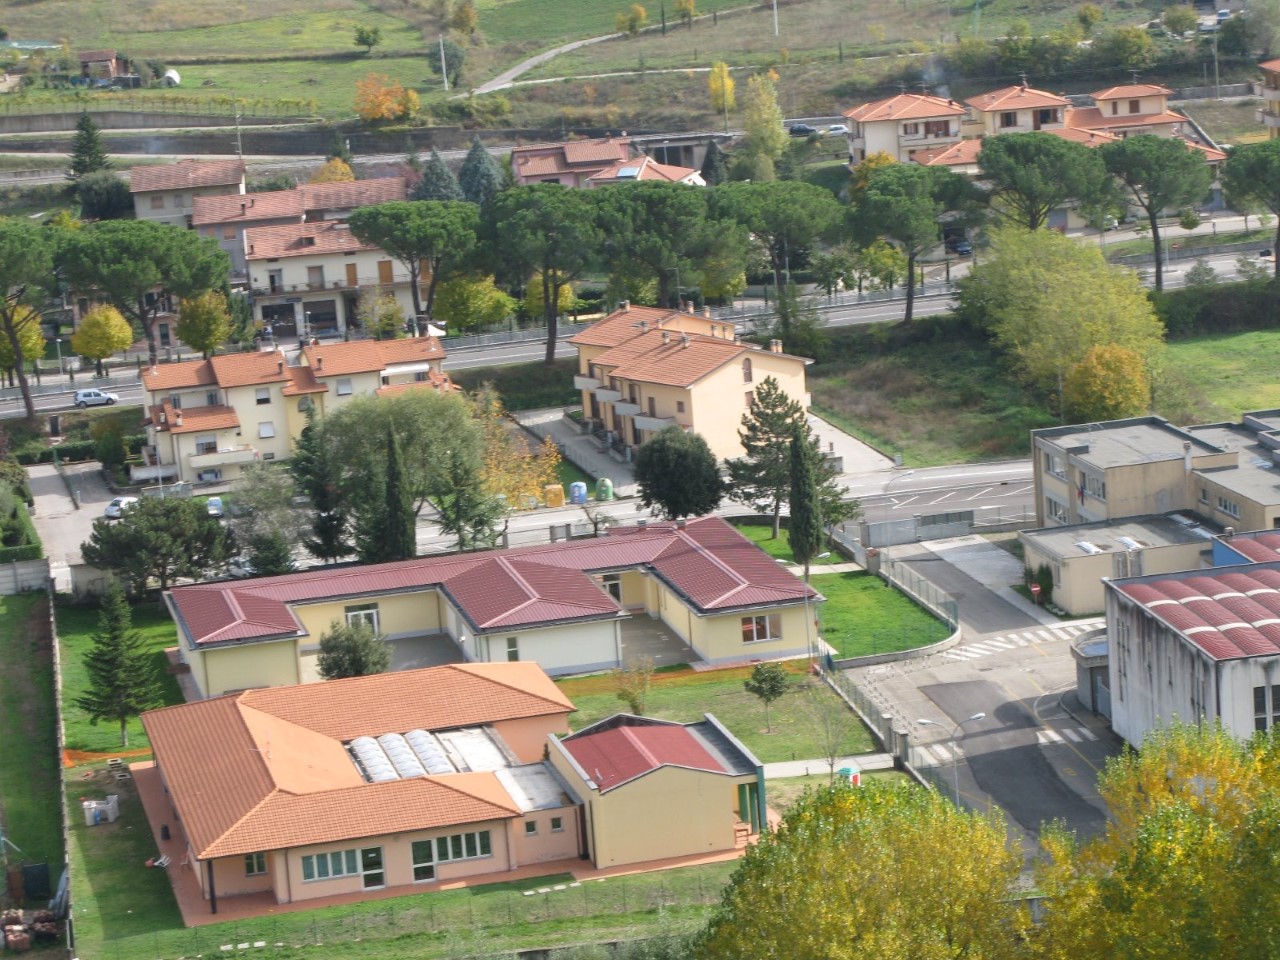 L’amministrazione di Castel Focognano risponde alle polemiche sollevate dal gruppo “FareComune” sulla scuola